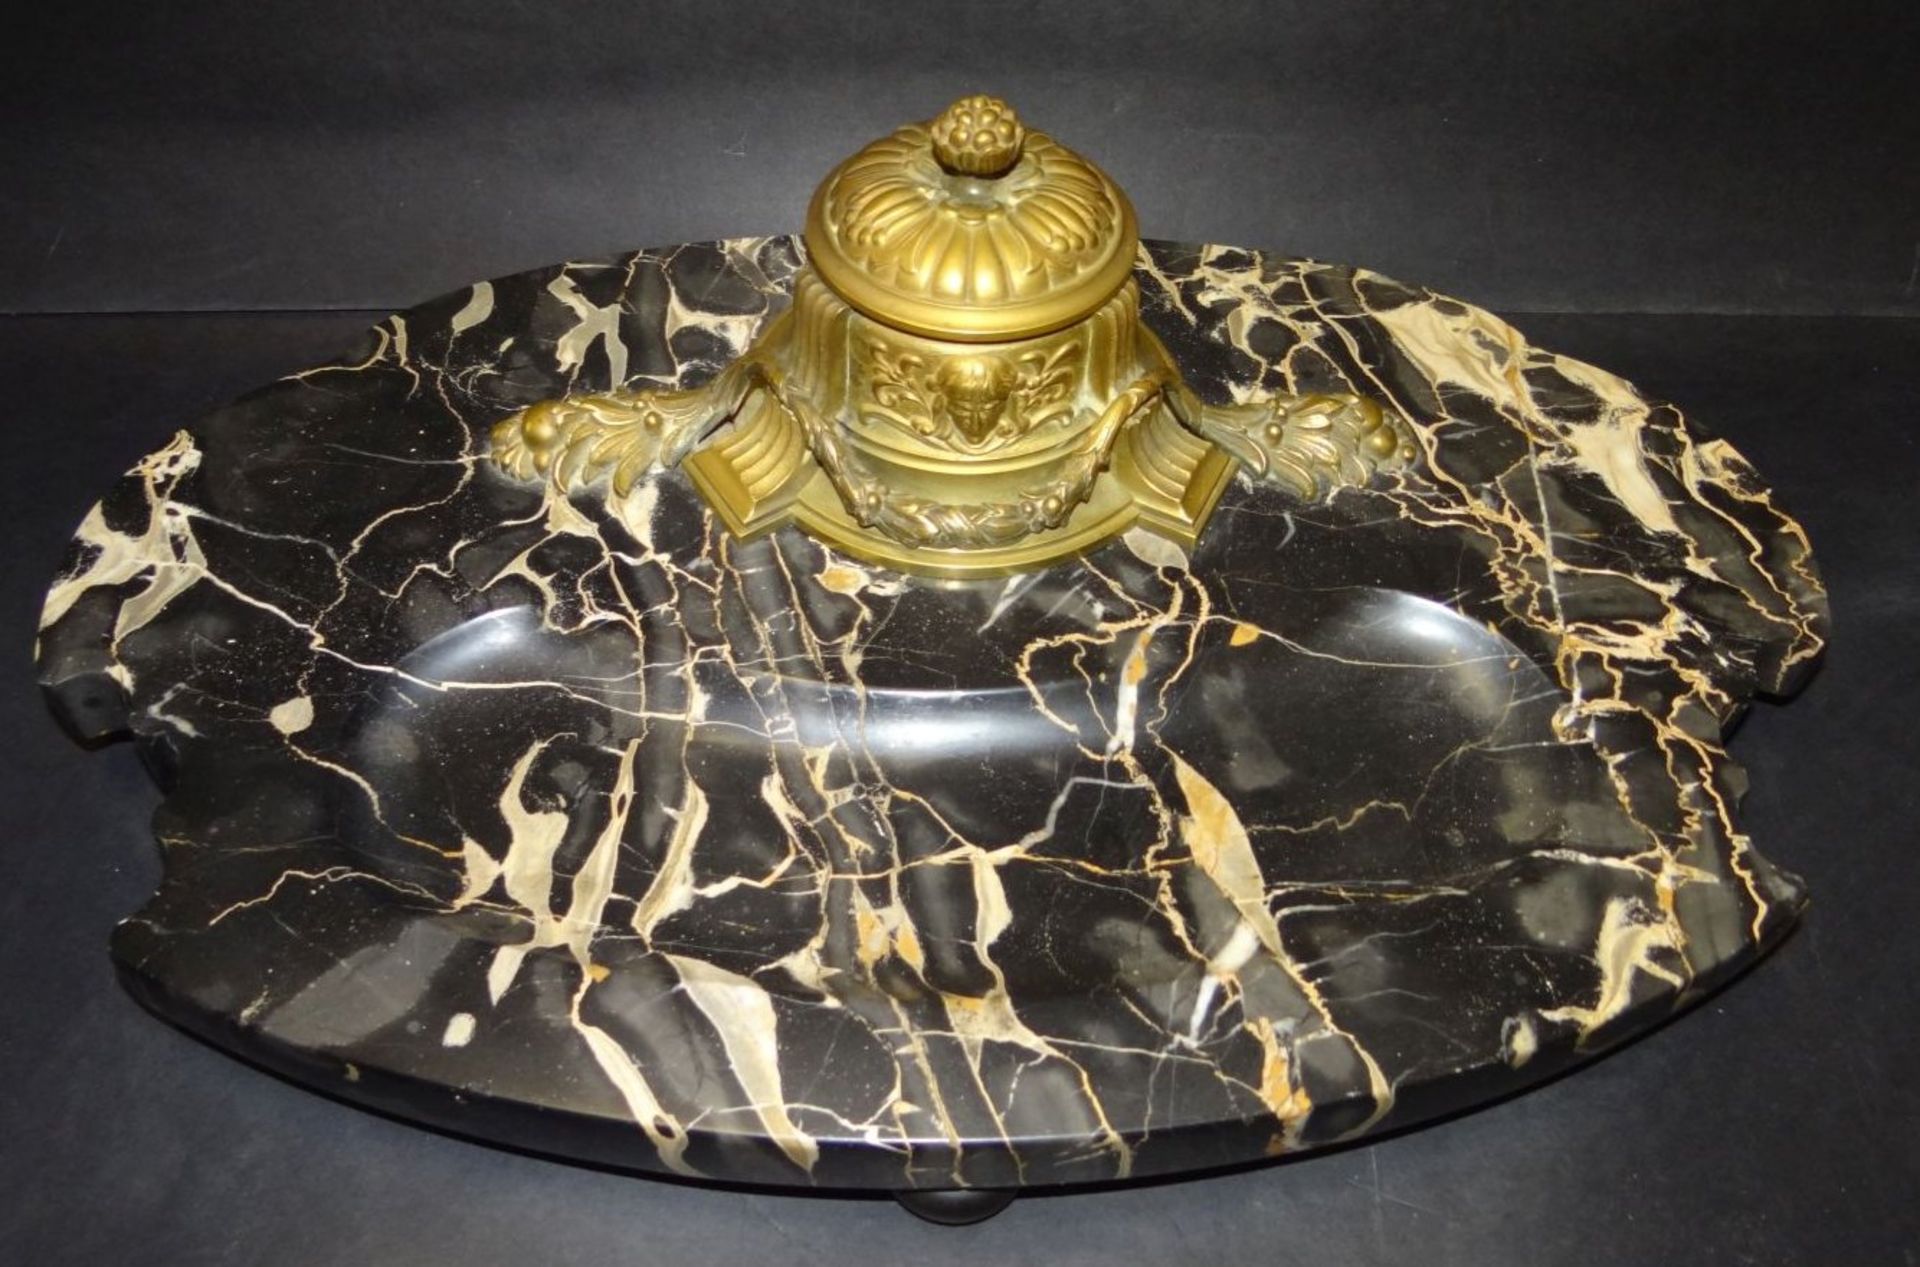 grosse Marmor Schreibtischablage mit Bronze Tintenfass um 1870, 39x24 cm- - -22.61 % buyer's premium